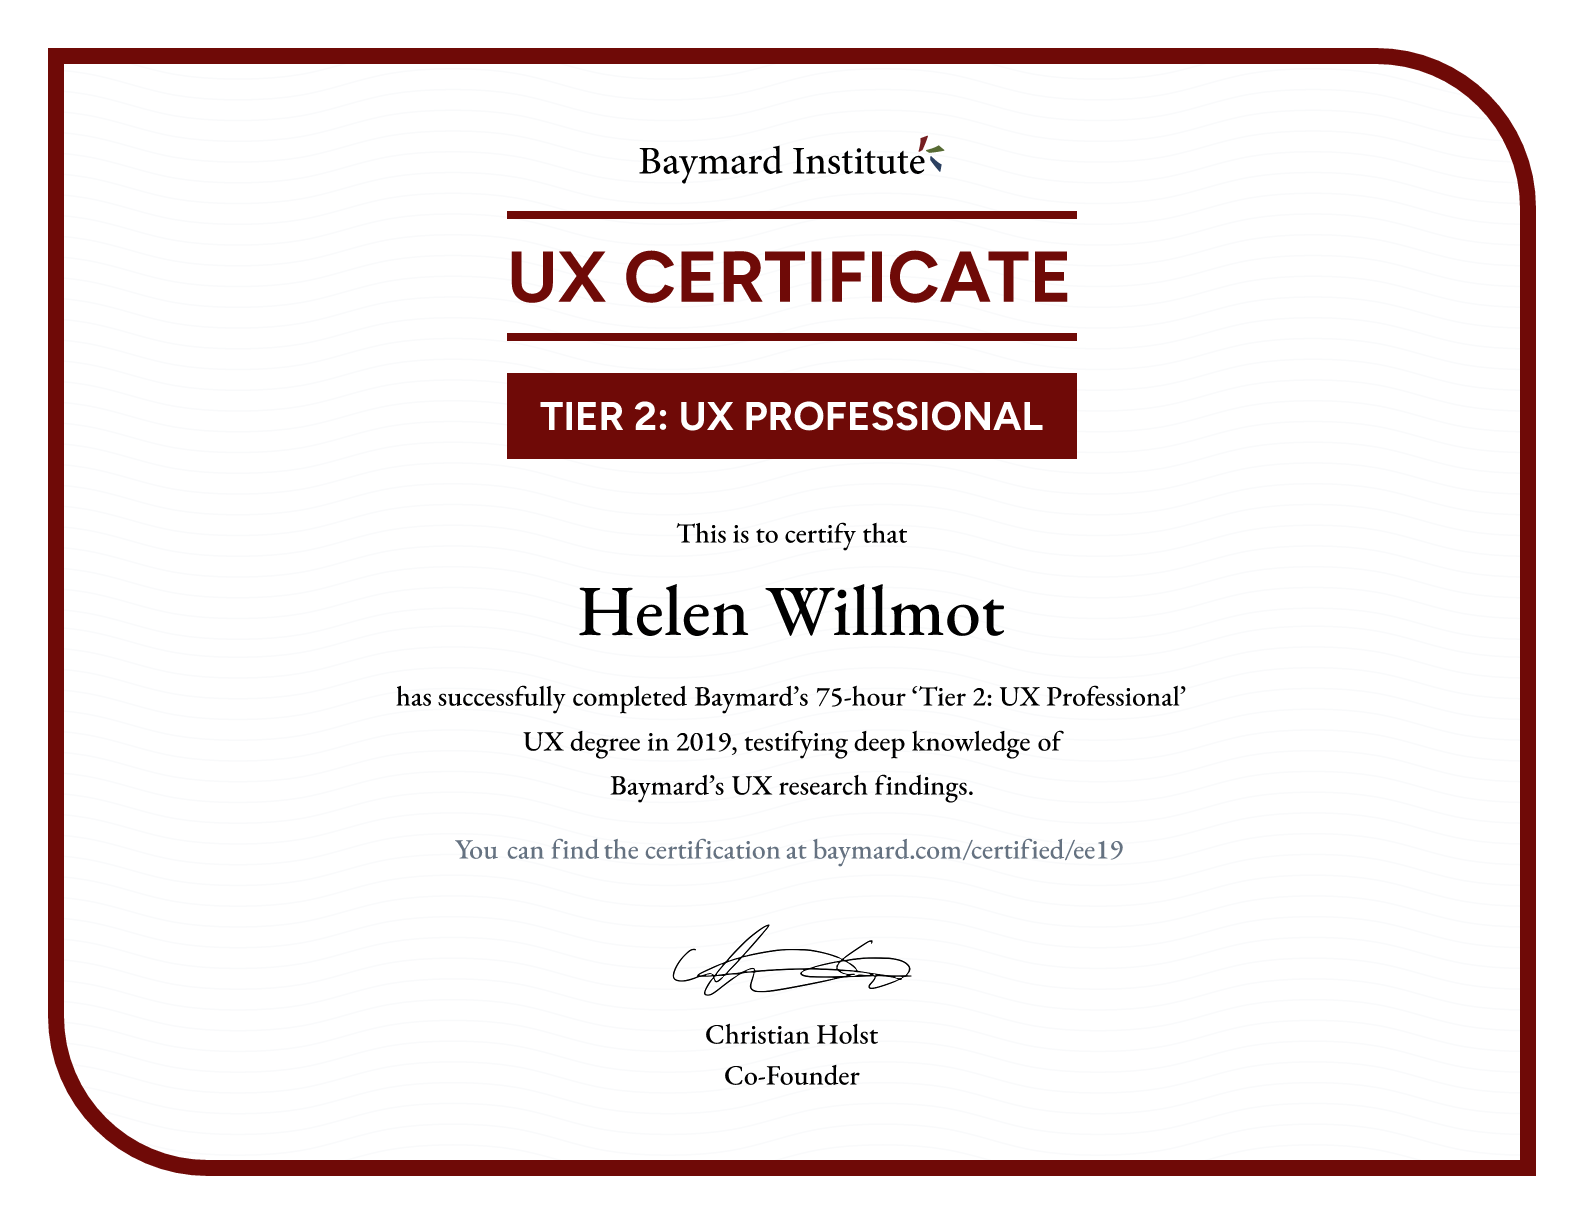 Helen Willmot’s certificate